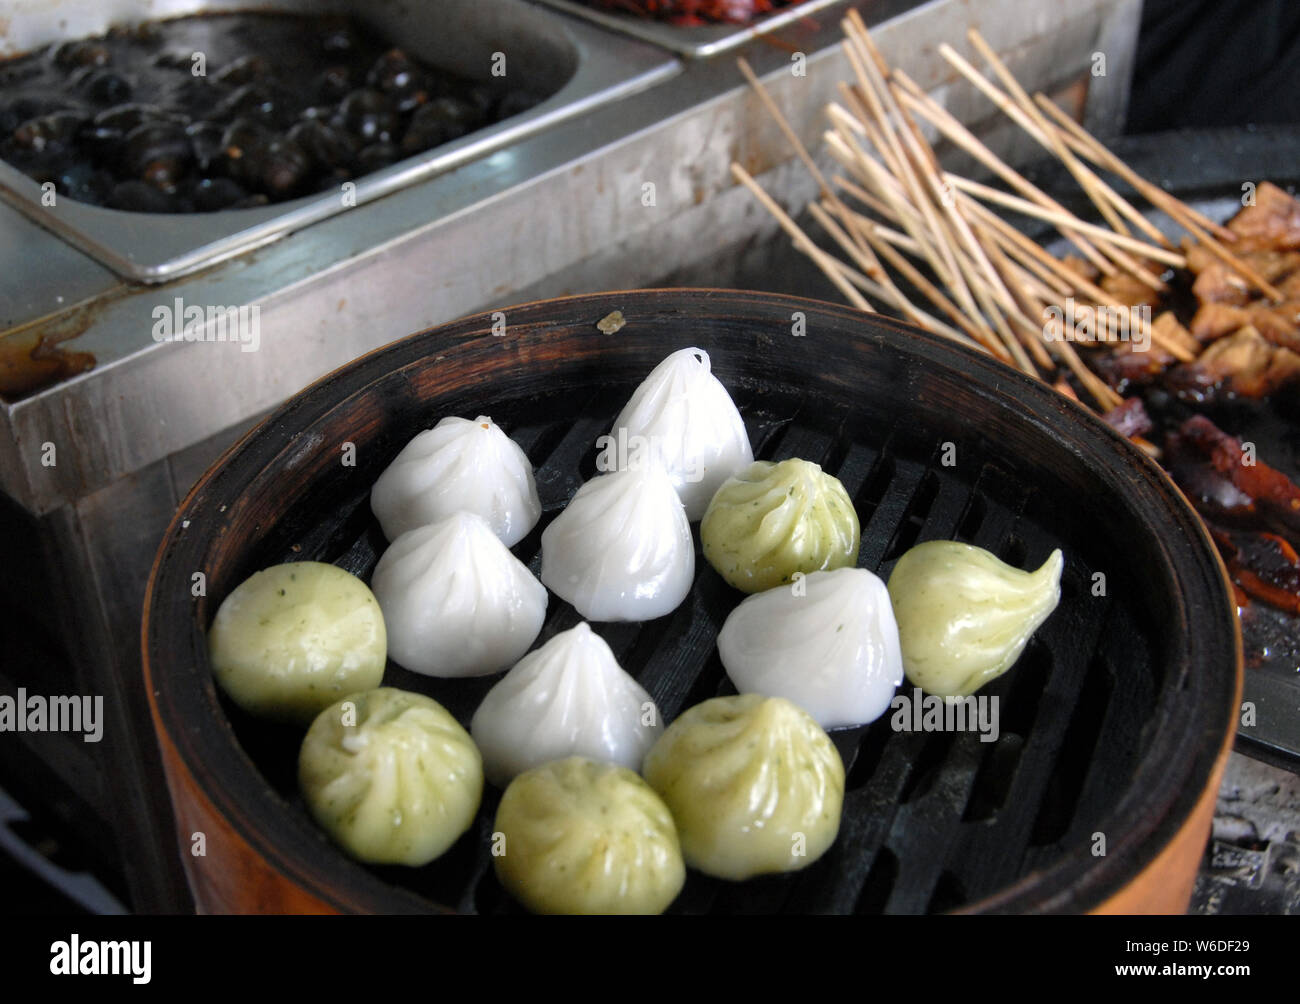 Boulettes chinoises à Xitang water town près de Shanghai. C'est l'alimentation de rue typiquement chinois. Ces boulettes à la vapeur sont populaires en Chine. Xitang, Chine Banque D'Images